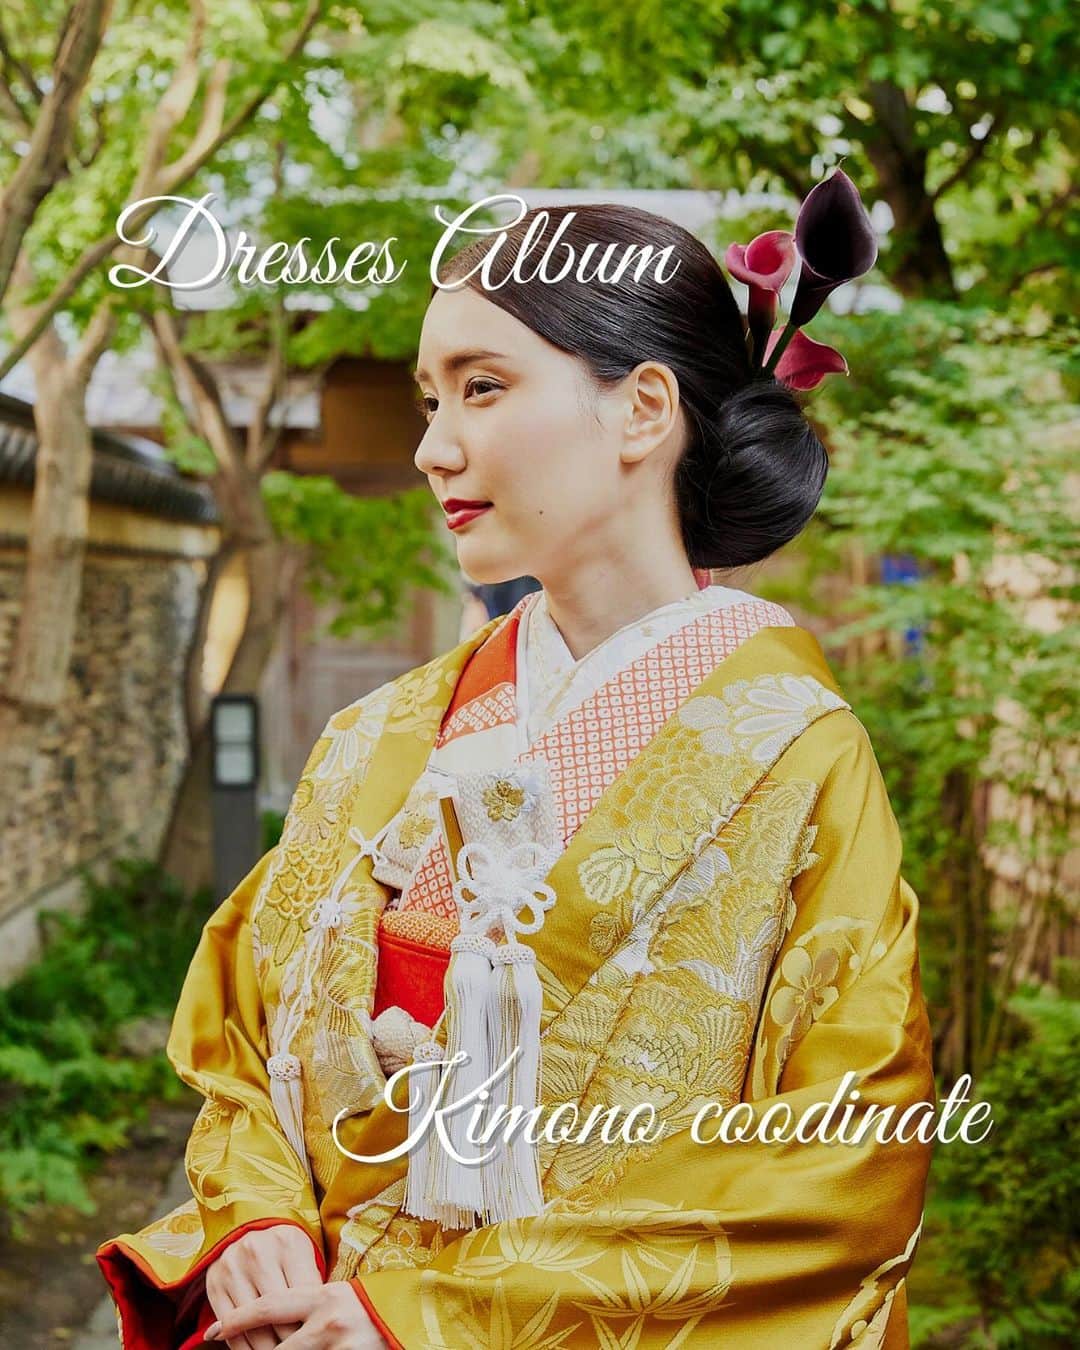 Dresses (ドレッシーズ)のインスタグラム：「←その他の投稿はこちらから  Dresses Album Kimono coodinate  日本の伝統的な花嫁衣装である、和装。  今ではコーディネイトを楽しみながら お召しになる花嫁様も増えています♡  豊富なアイテムの中から 自分らしい組み合わせを見つけてみてくださいね♪  保存しておけば小物合わせの時に サッと確認できて便利ですよ♡ ___________________  Dressesブライダルカウンター  　　結婚準備に関わる ＼お役立ち情報を発信中／  ”ドレスと結婚式費用がおトクになる” ブライダルカウンターがお届けする 結婚準備情報メディアアカウント🕊  こんなあなたにオススメです💫  ✔︎結婚が決まりこれから準備を始める ✔︎楽しく結婚準備をすすめたい ✔︎おふたりらしい結婚式を叶えたい  お問合せ・ご来館予約は プロフィールの「連絡する」より 受け付けております💒  ▼その他のお役立ち情報はこちらから @dresses_weddings  ___________________ #花嫁和装 #白無垢 #色打掛 #ドレス選び #ドレッシーズブライダルカウンター #ドレッシーズ #ブライダルカウンター #結婚式場探し #式場探し #結婚式場見学 #式場見学 #結婚式場選び #式場選び #結婚準備 #結婚準備中 #式場紹介 #結婚式場紹介 #式場紹介 #結婚式準備レポ #結婚式準備レポ #福岡花嫁 #関西花嫁 #広島花嫁 #熊本花嫁 #鹿児島花嫁」